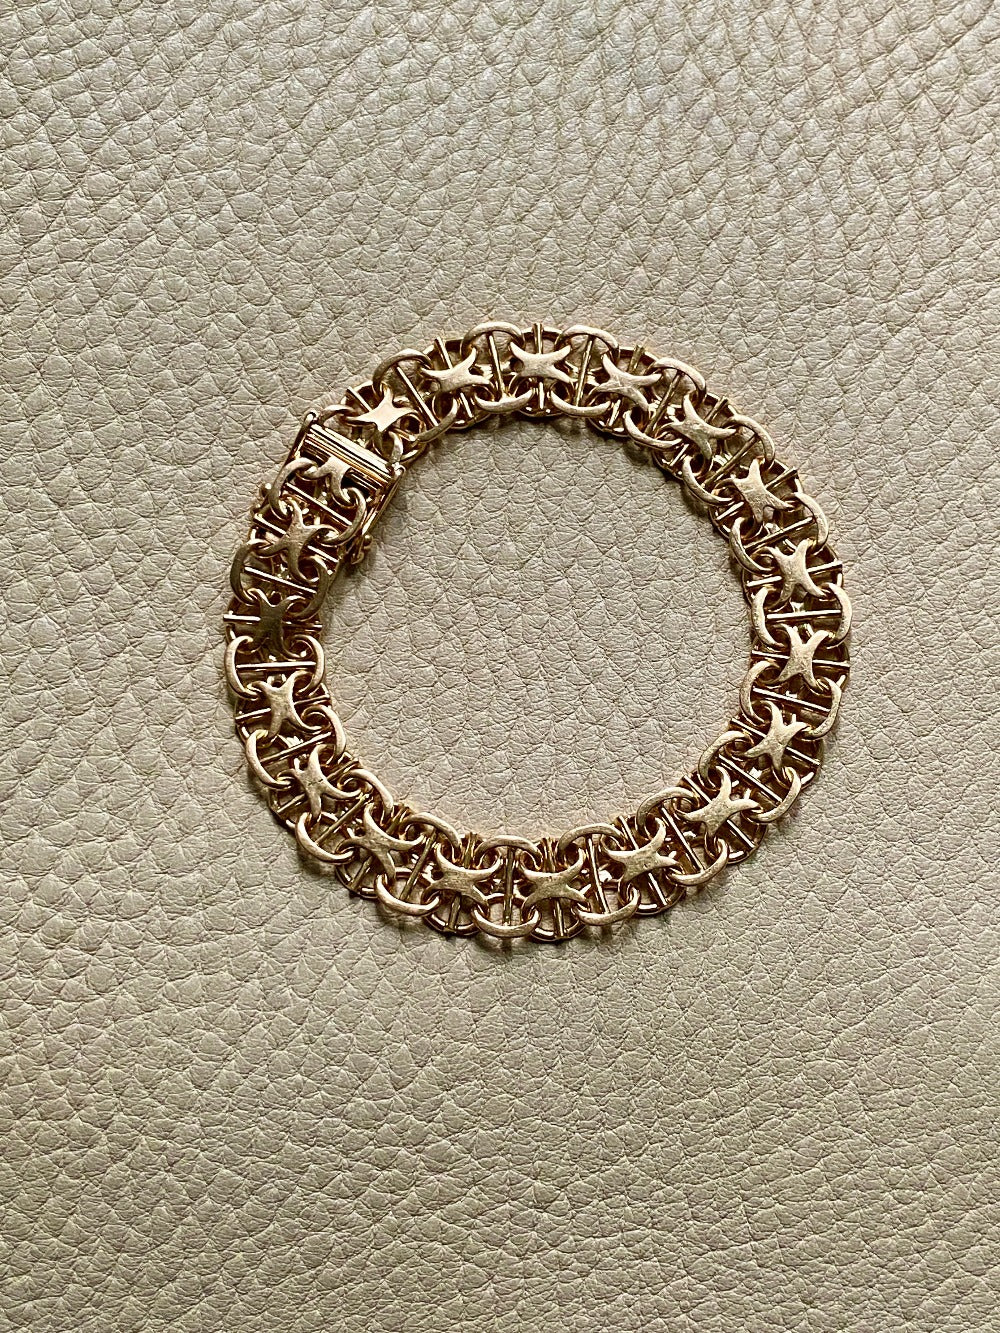 1963 Star link variation 18k gold bracelet - Vintage Swedish - 7.5 inch length